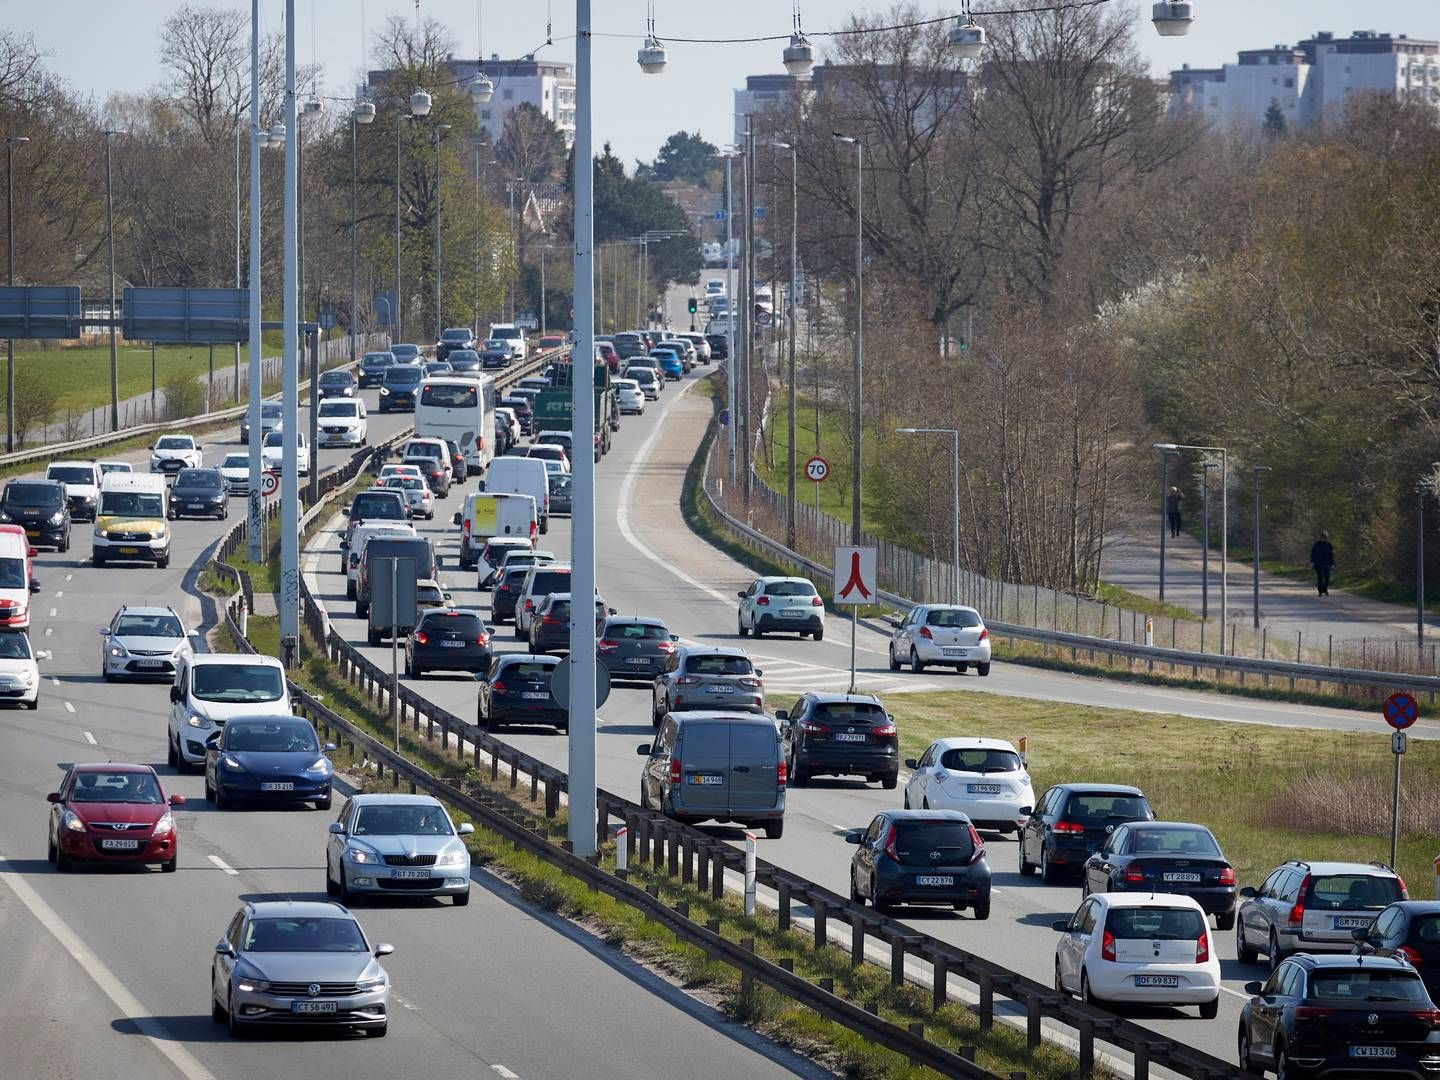 I 2035 vil der være 9 pct. flere biler på vejene i hovedstadsområdet, ifølge ny analyse. | Foto: Jens Dresling/Ritzau Scanpix